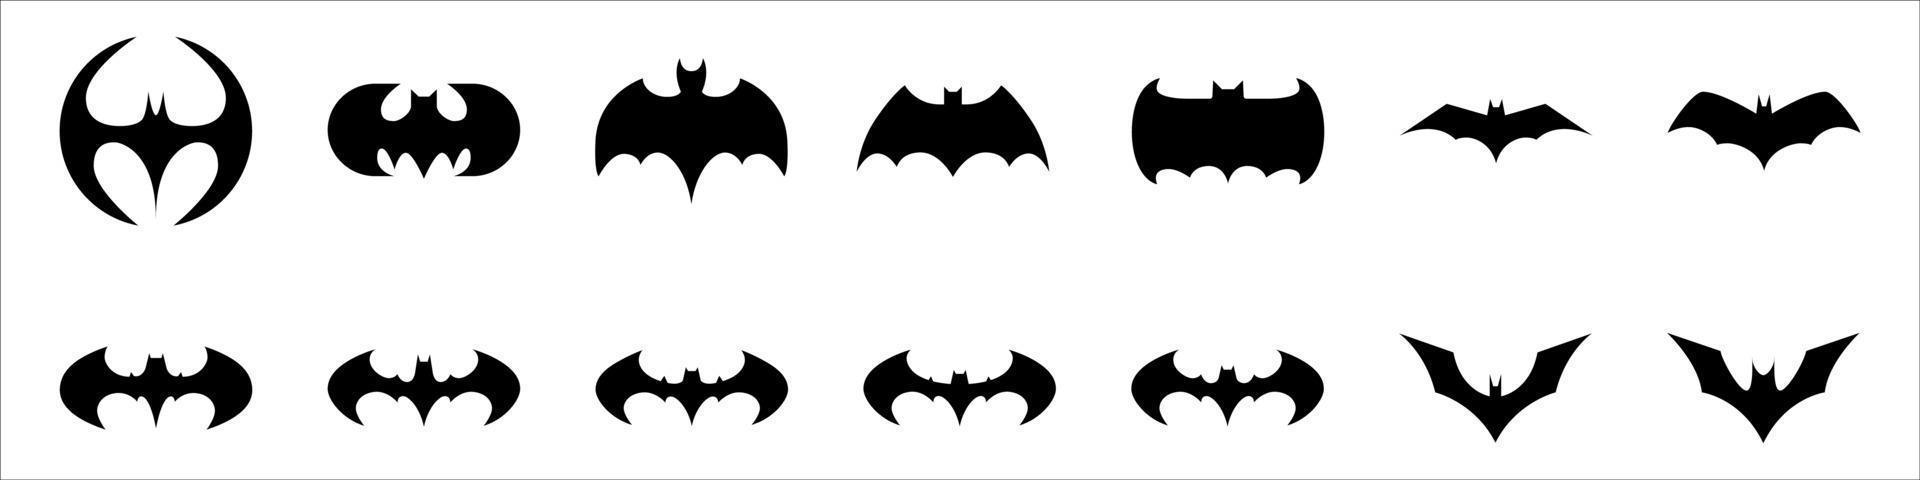 siluetas negras de diferentes murciélagos vector